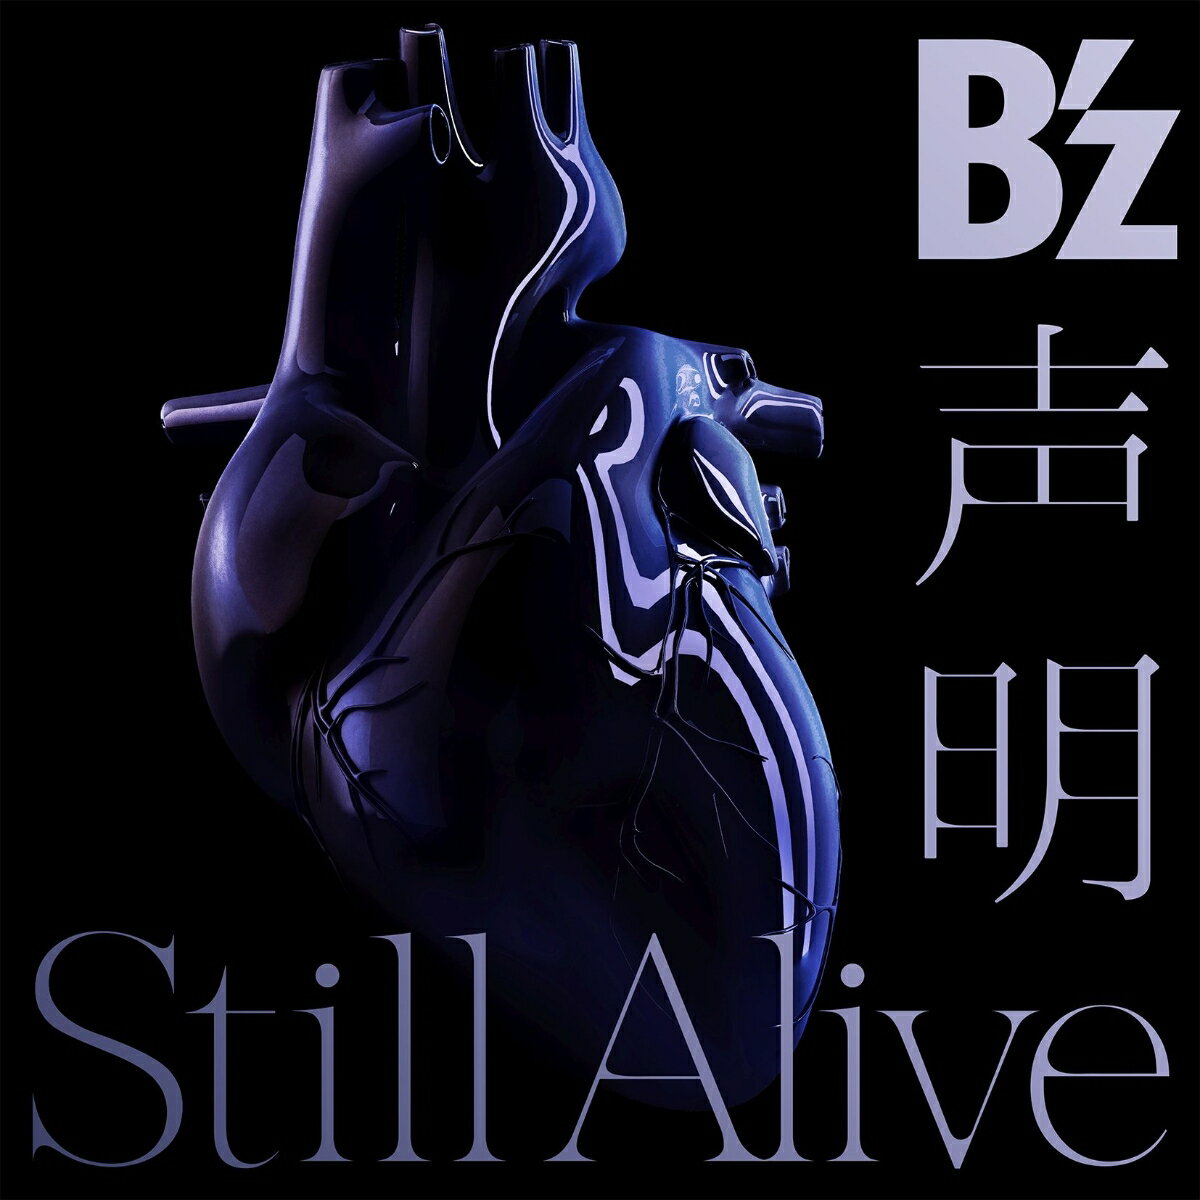  / Still Alive ( CDDVD) [ B'z ]